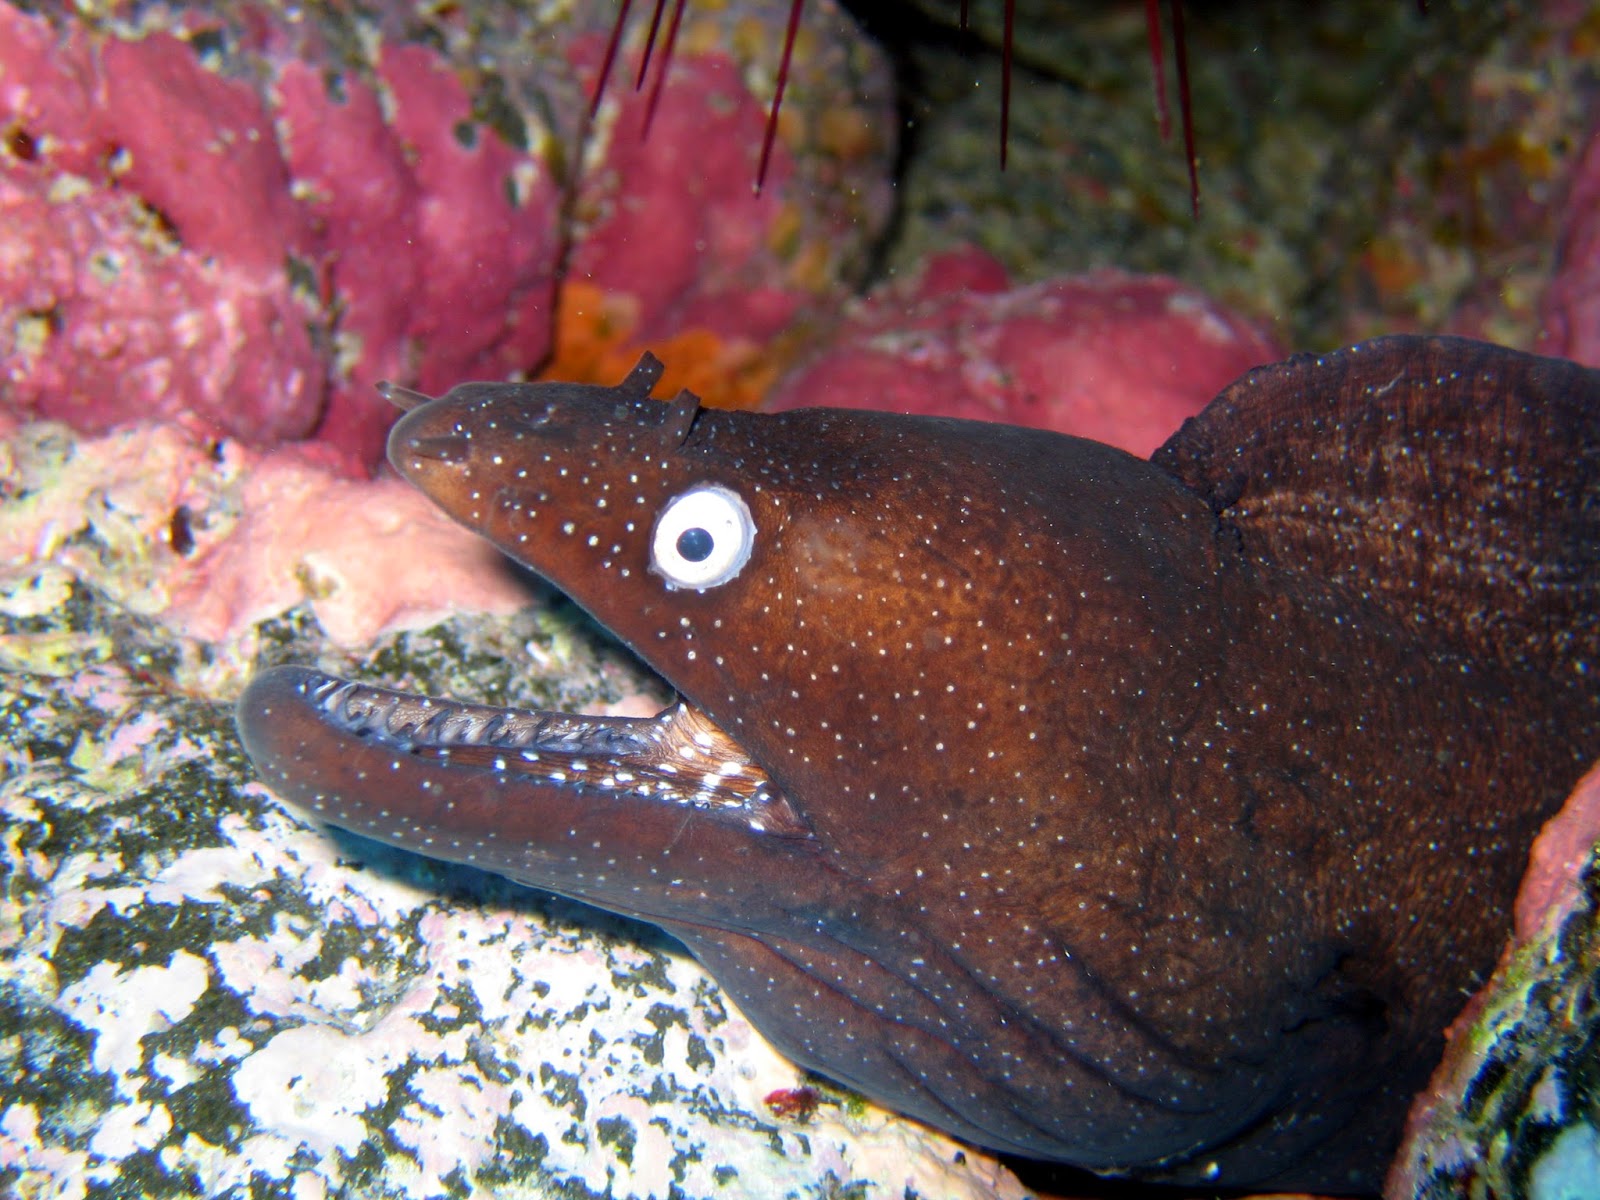 Protejamos las Maravillas del Mar: Morena: el extraño pez de las leyendas